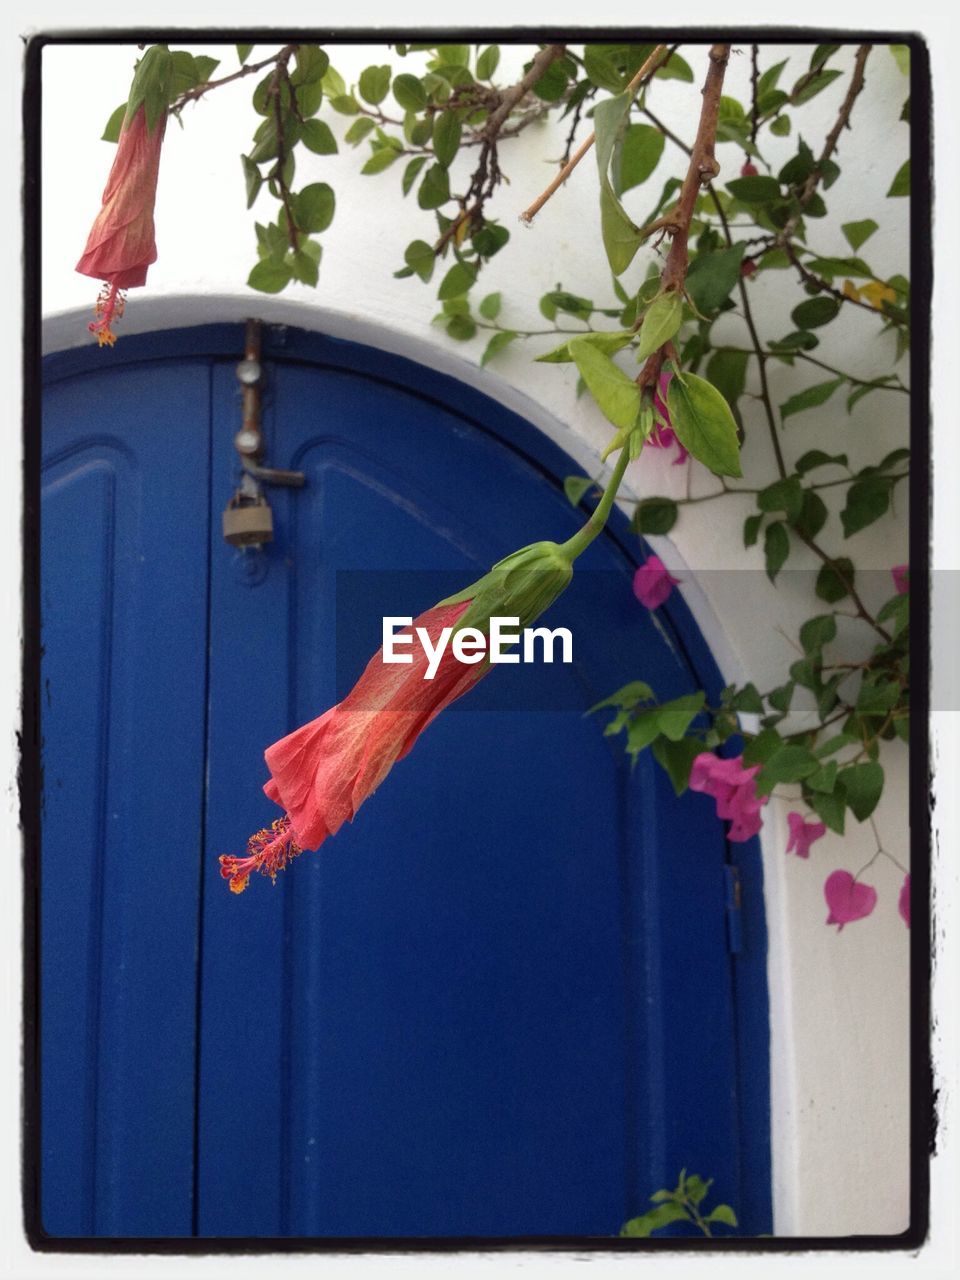 Flowers hanging in front of blue door